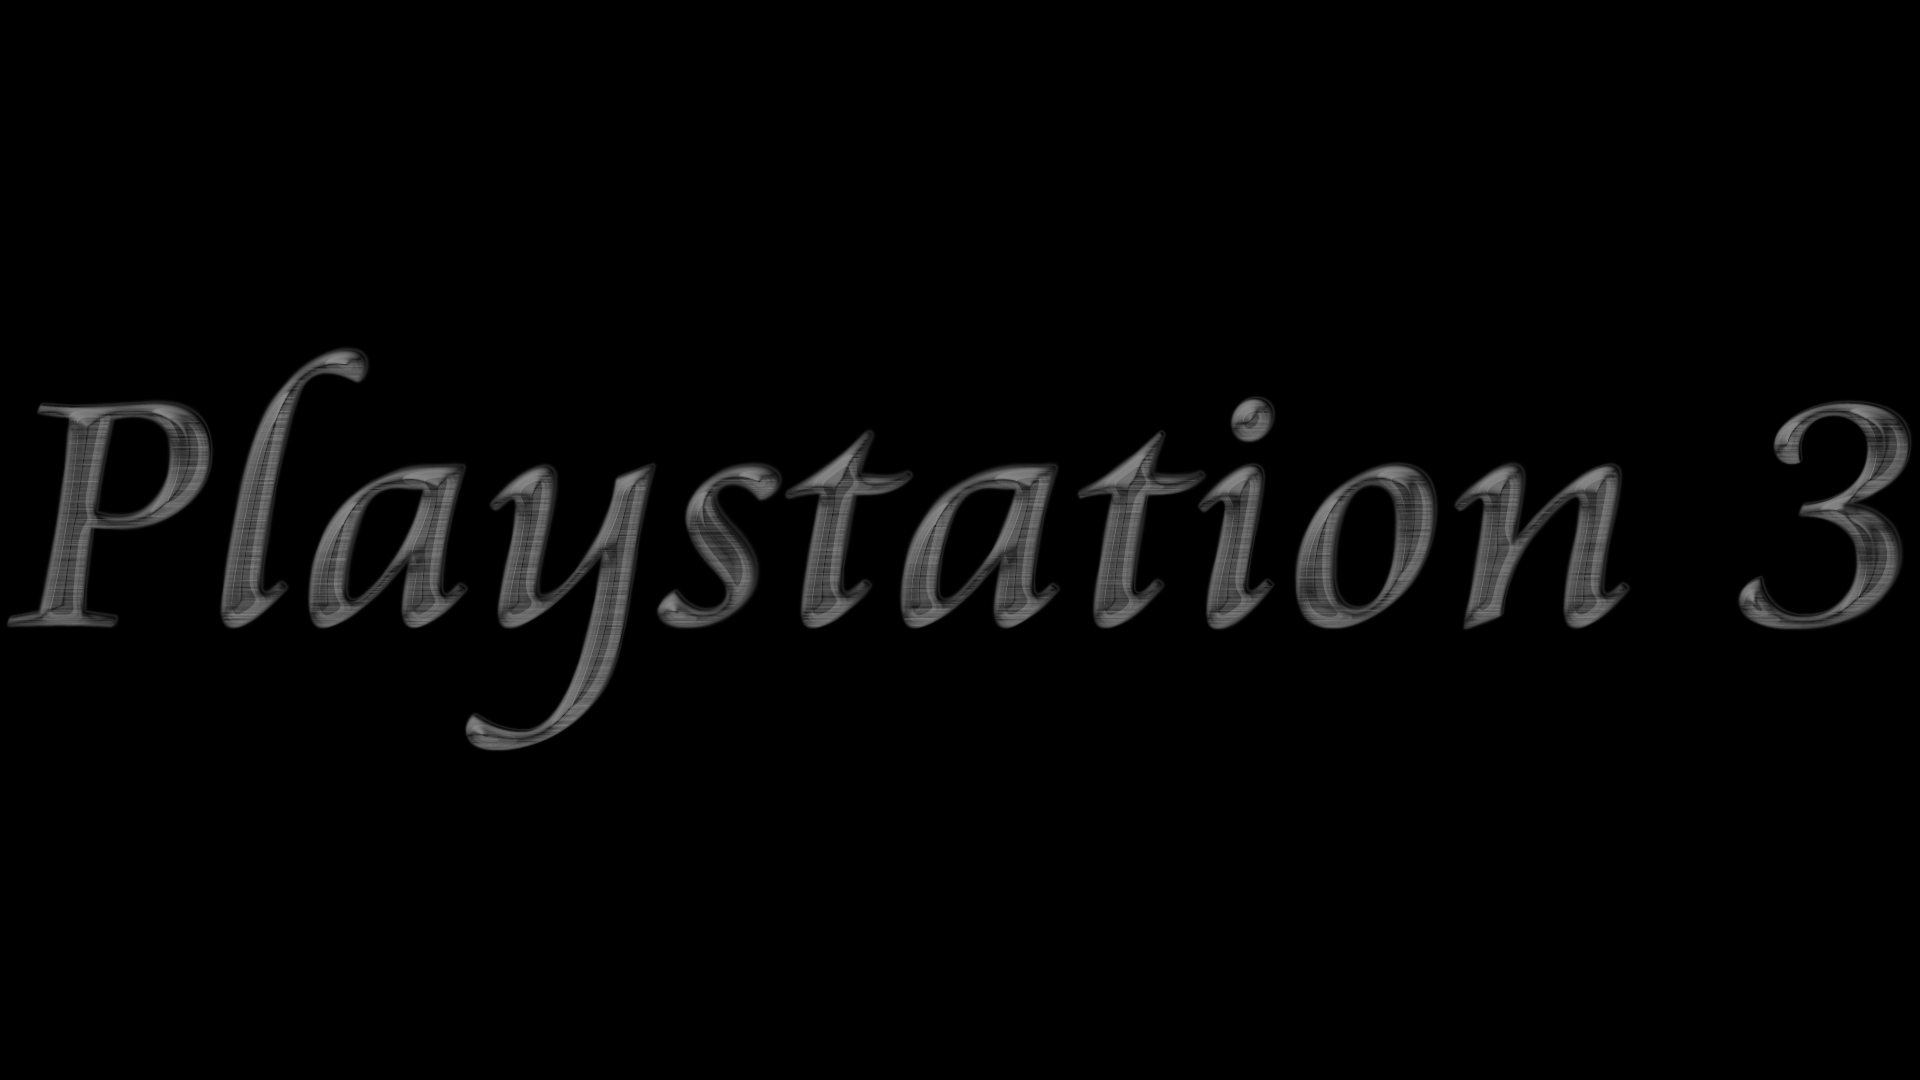 playstation 3 logo wallpaperPS3 Logo Wallpaper PlayStation Community